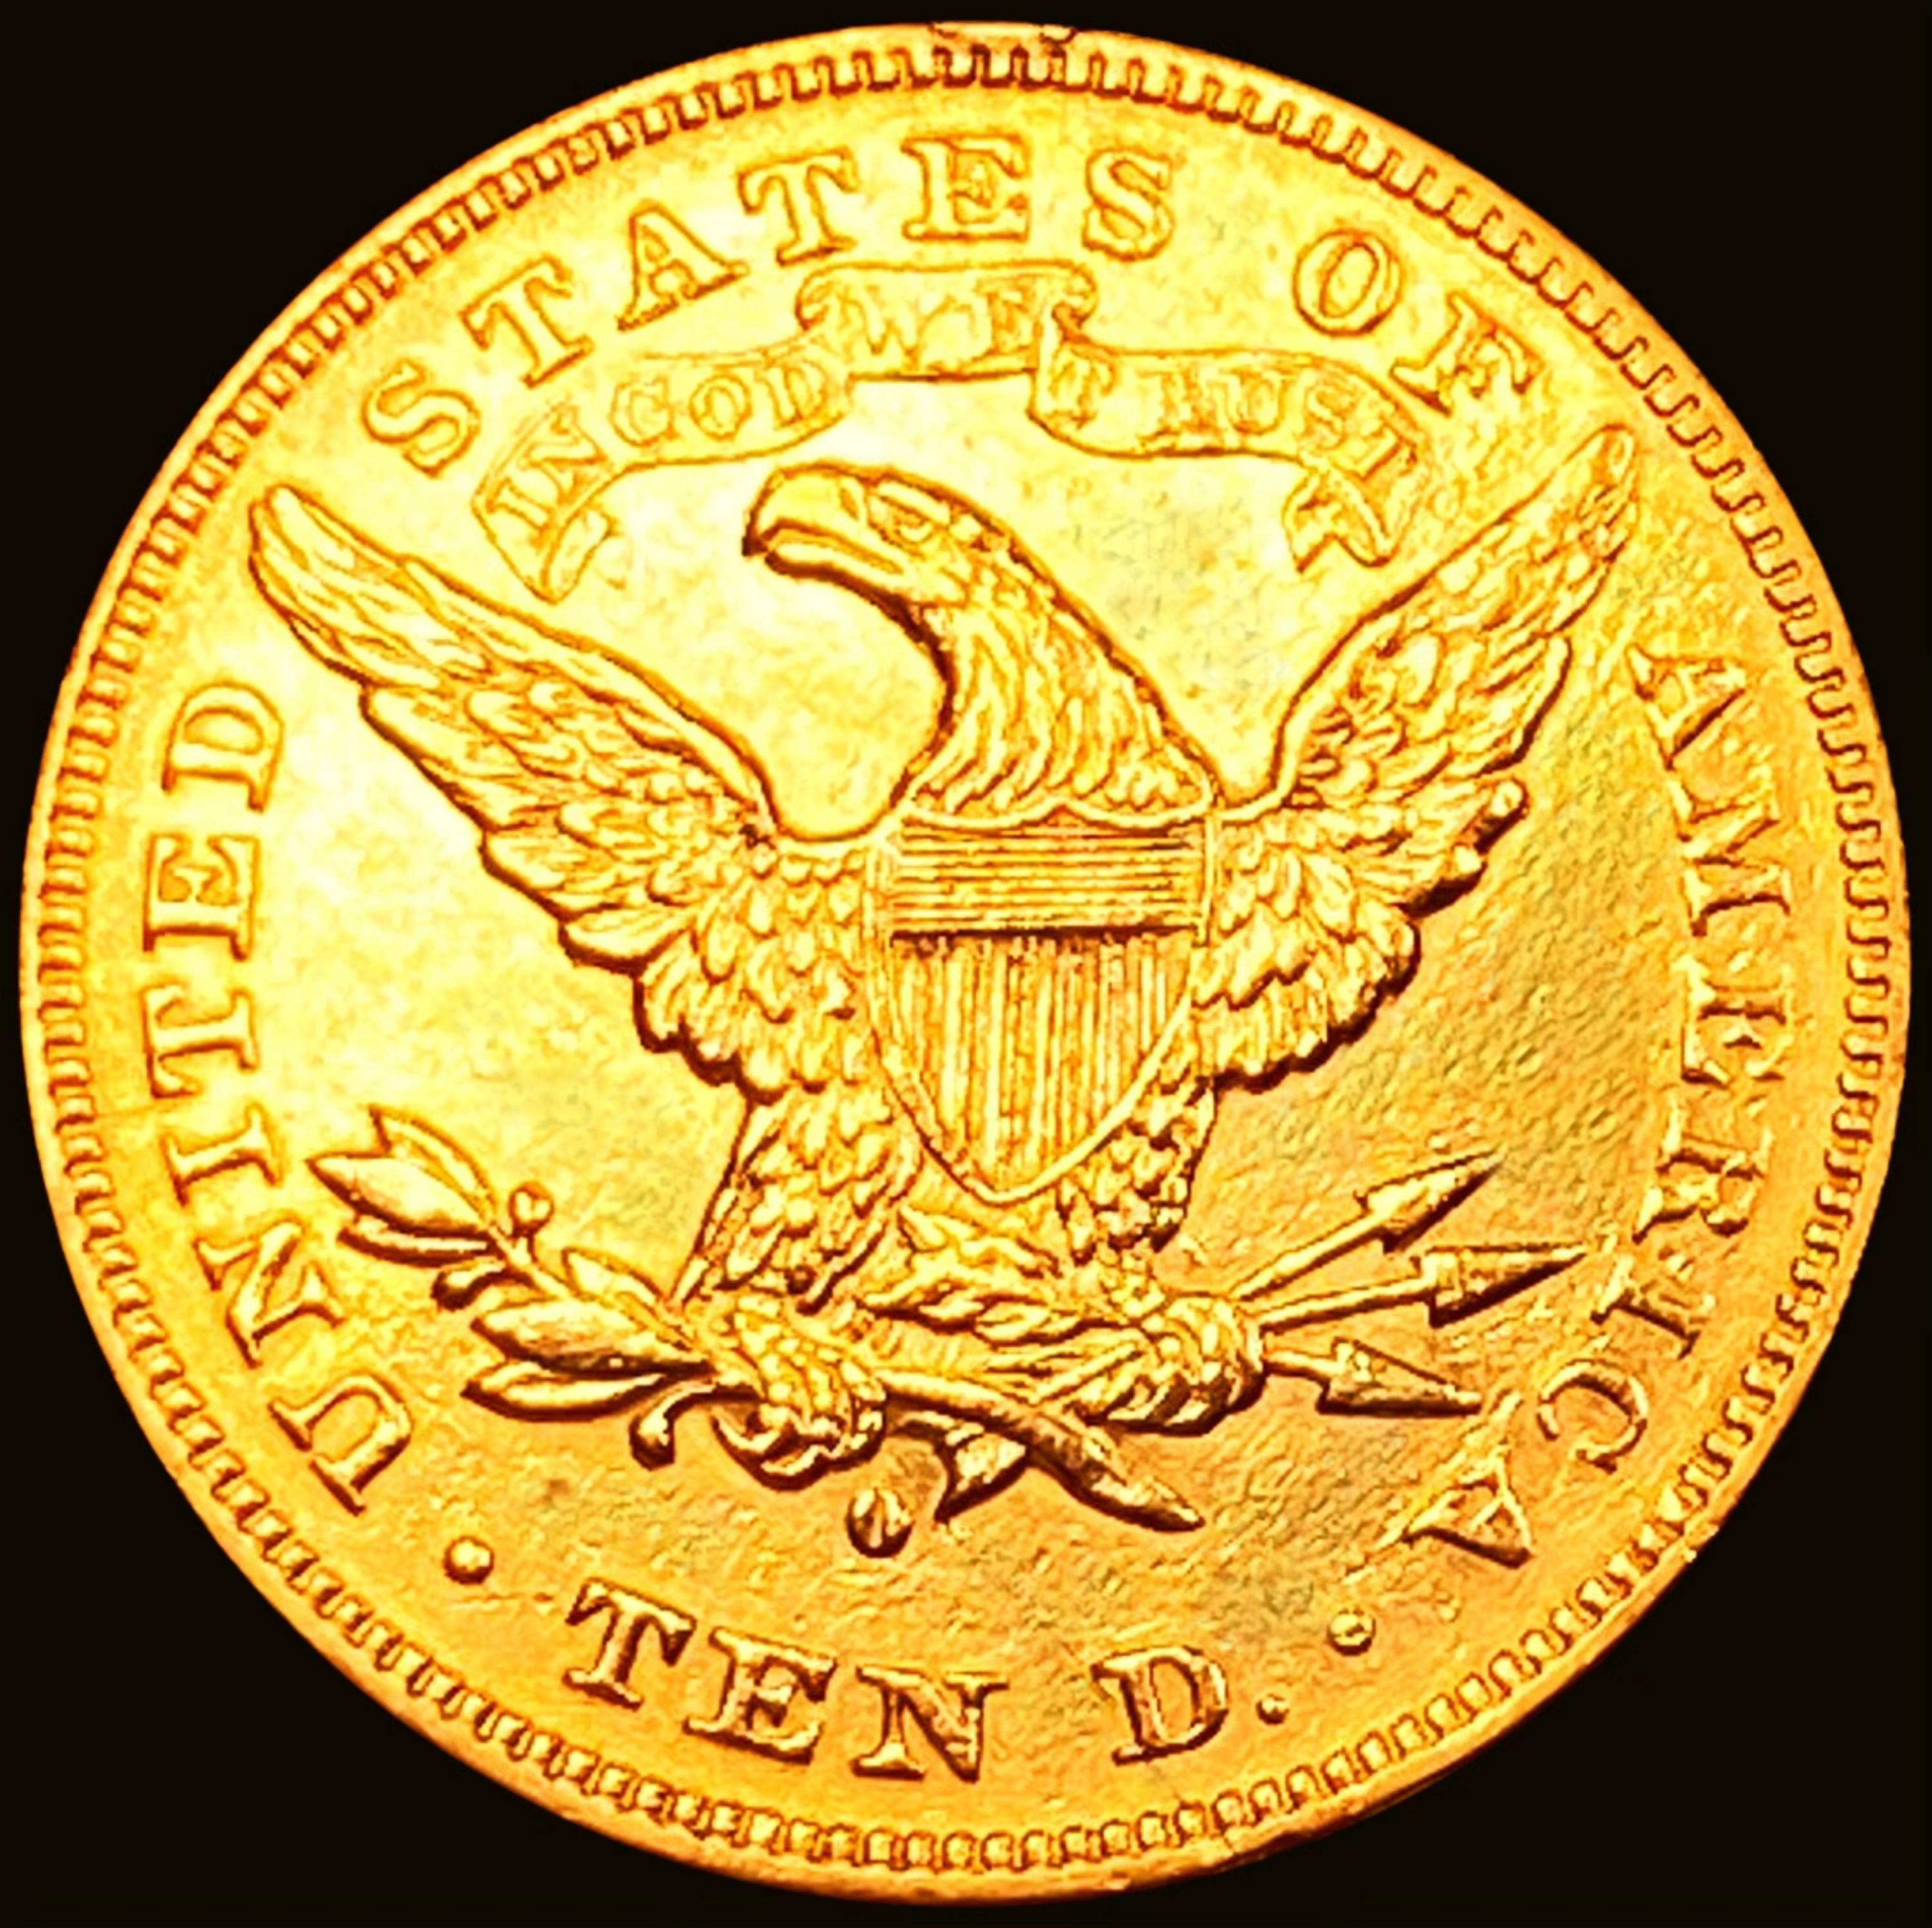 1880-O $10 Gold Eagle UNCIRCULATED